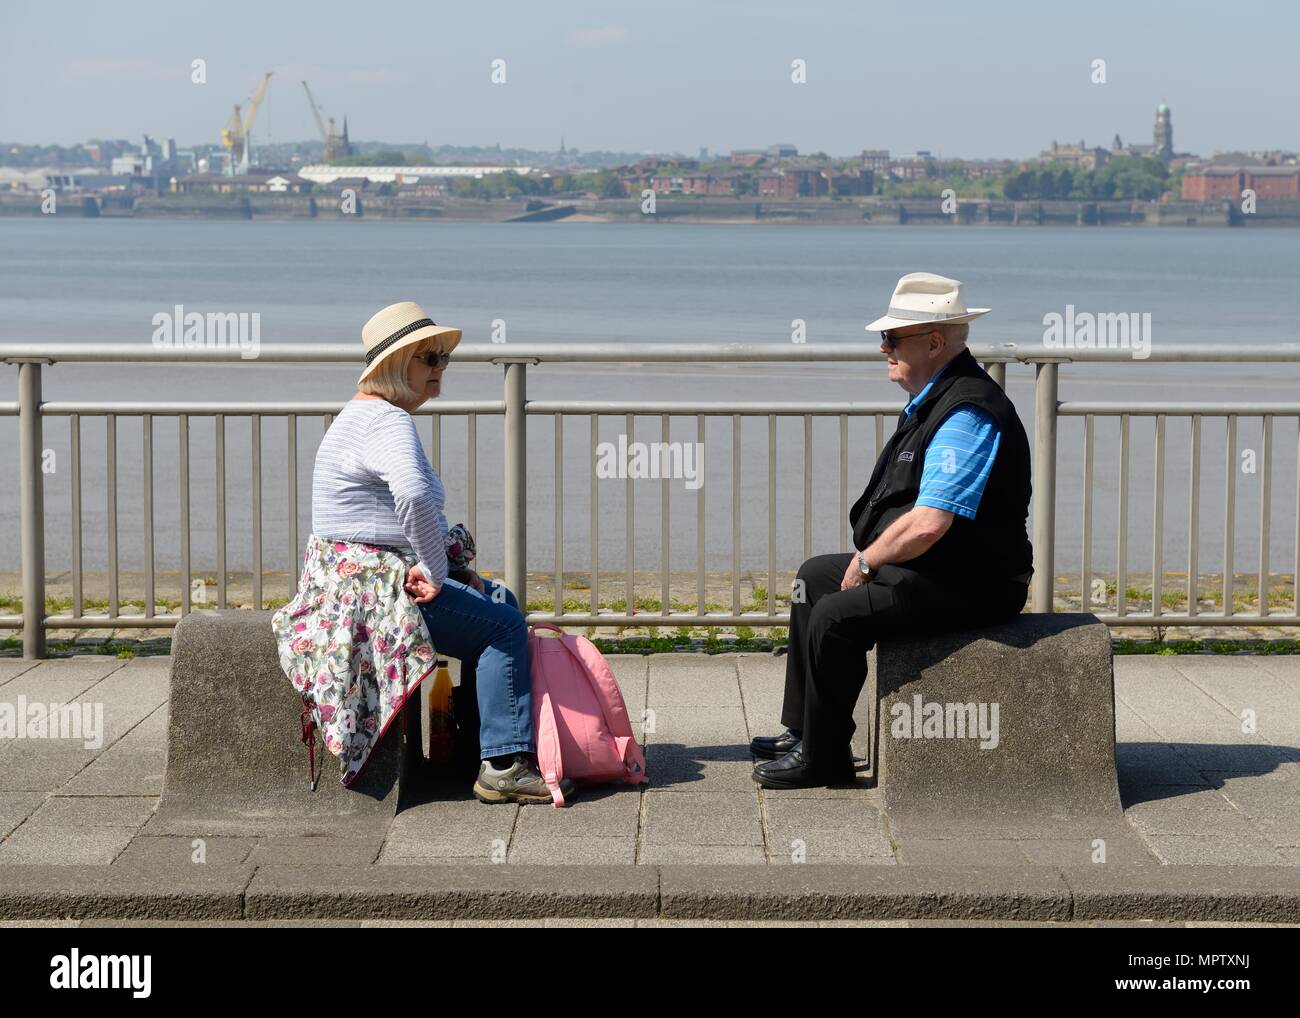 Ein älteres Ehepaar auf Poller an der Seite des Flusses Mersey an einem warmen sonnigen Tag in Liverpool, England, UK Stockfoto